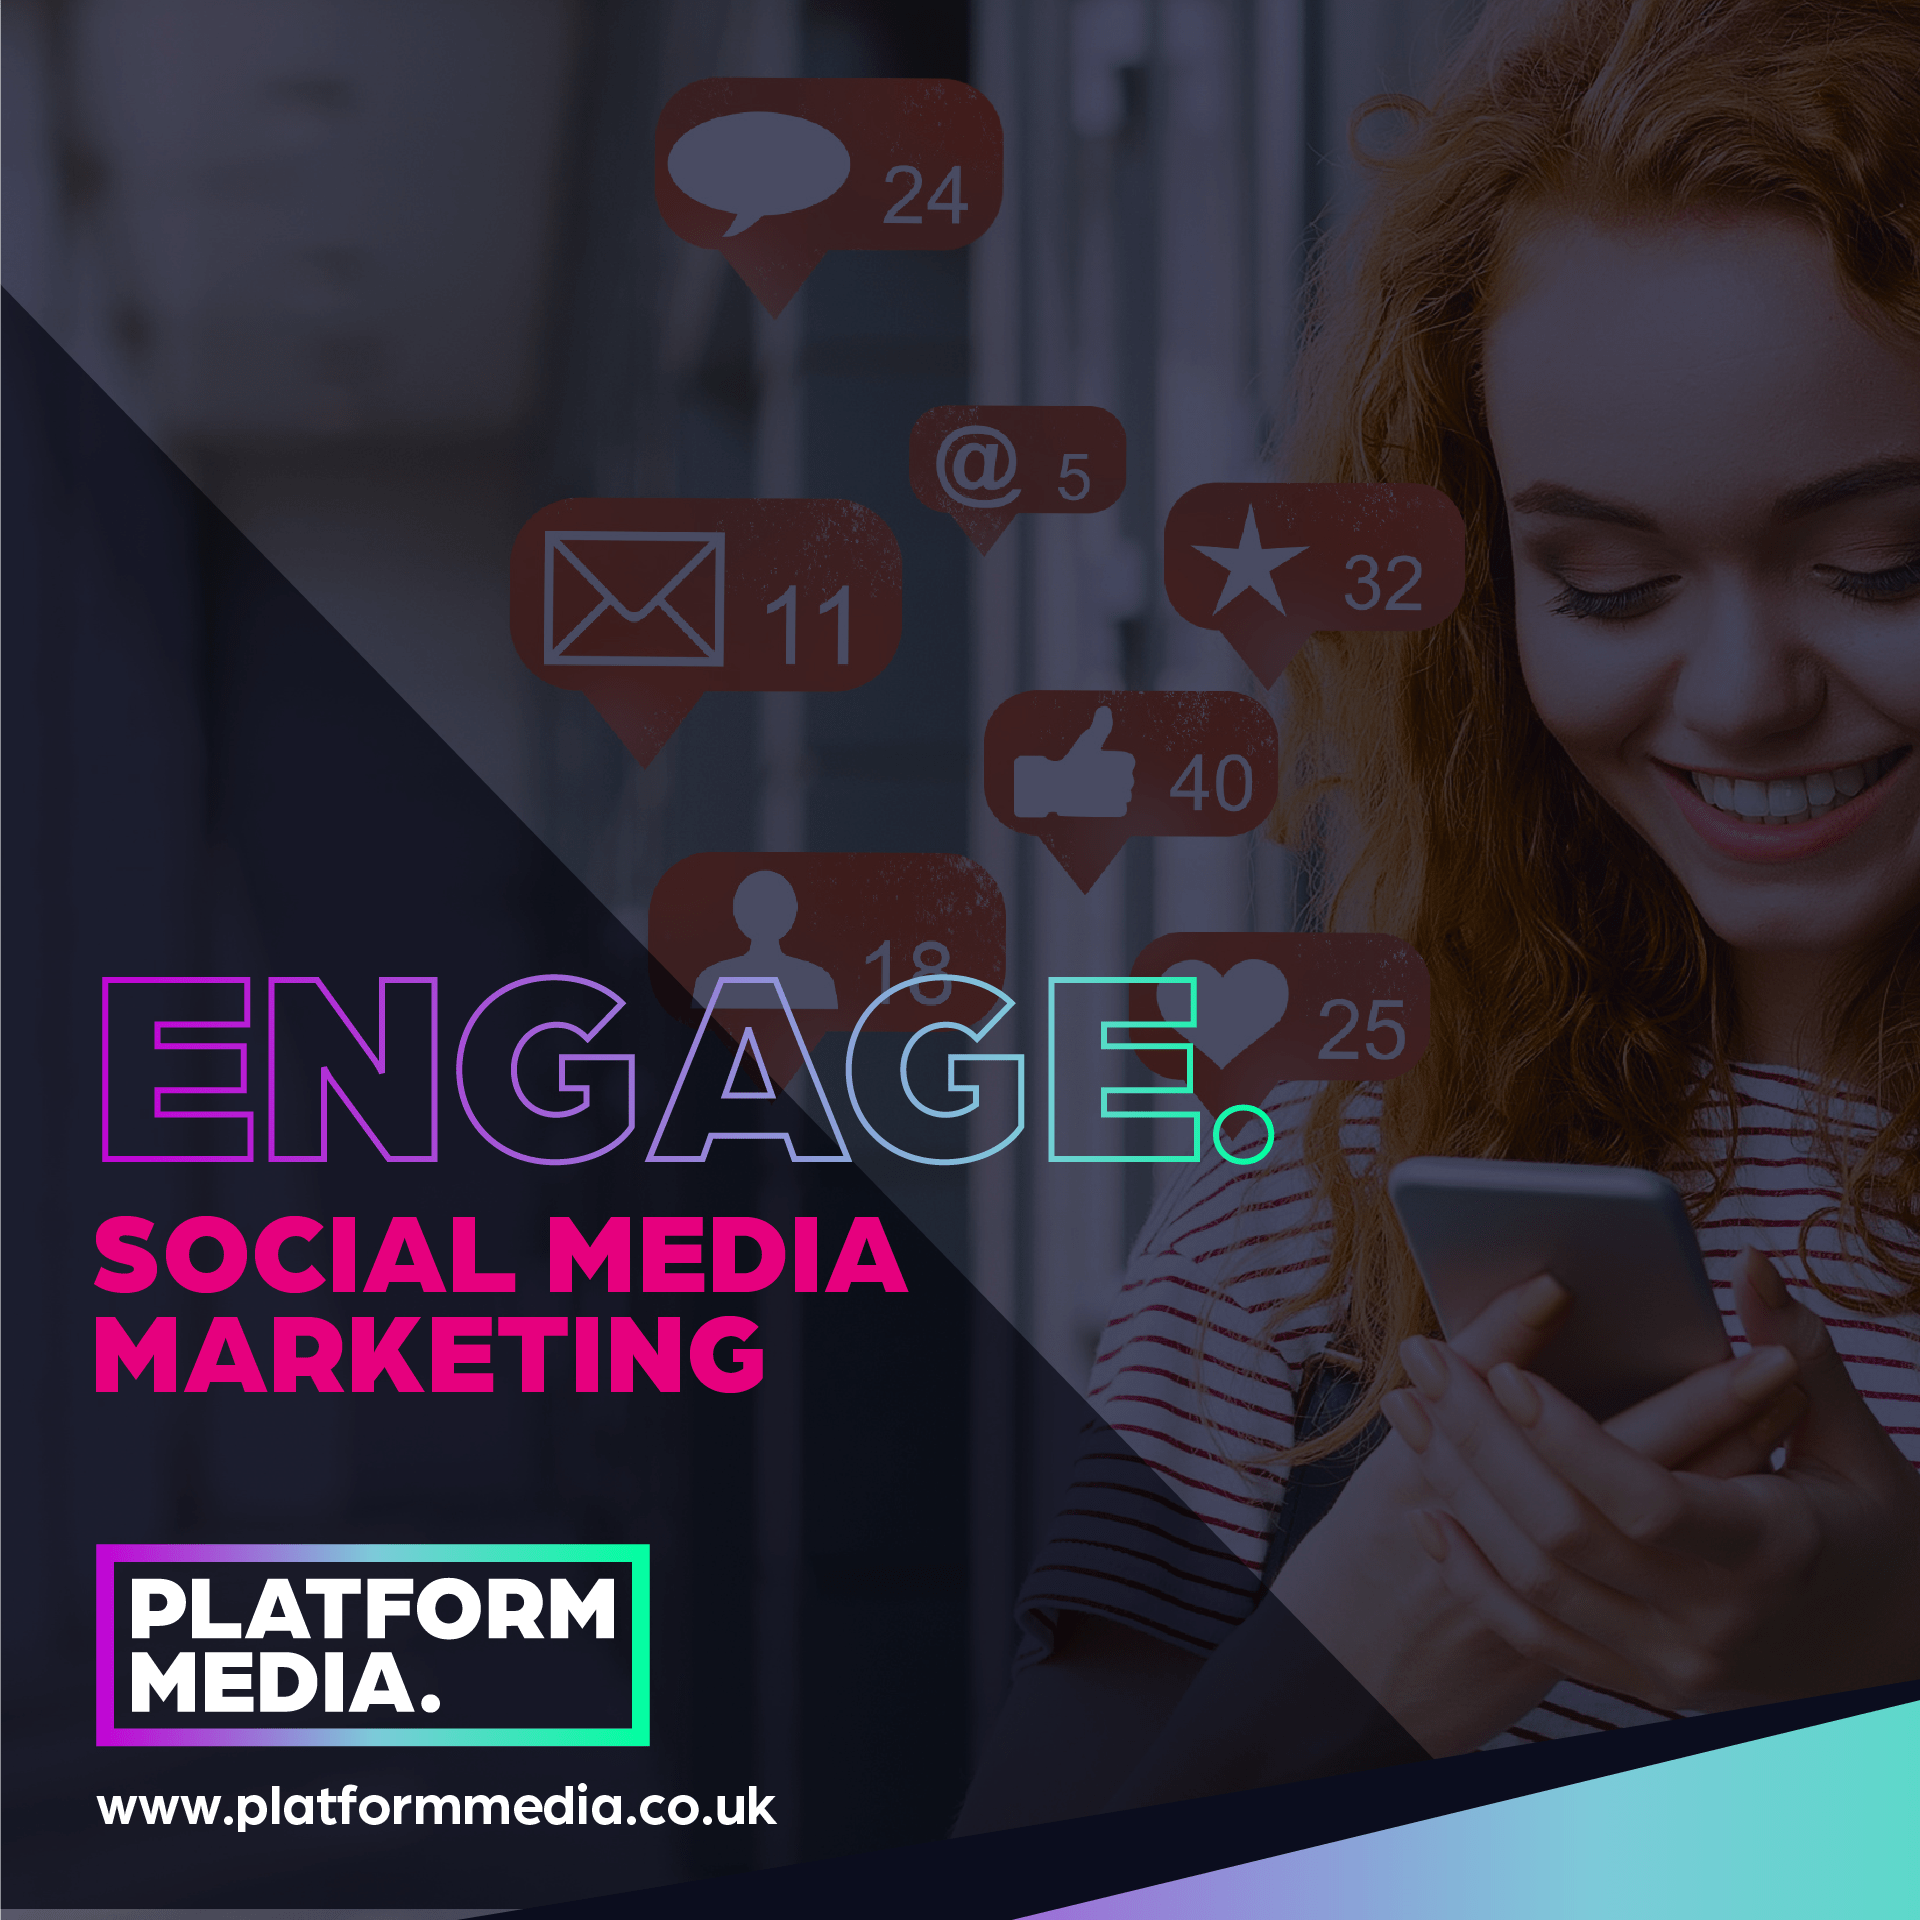 Social Media Marketing - Platform Media